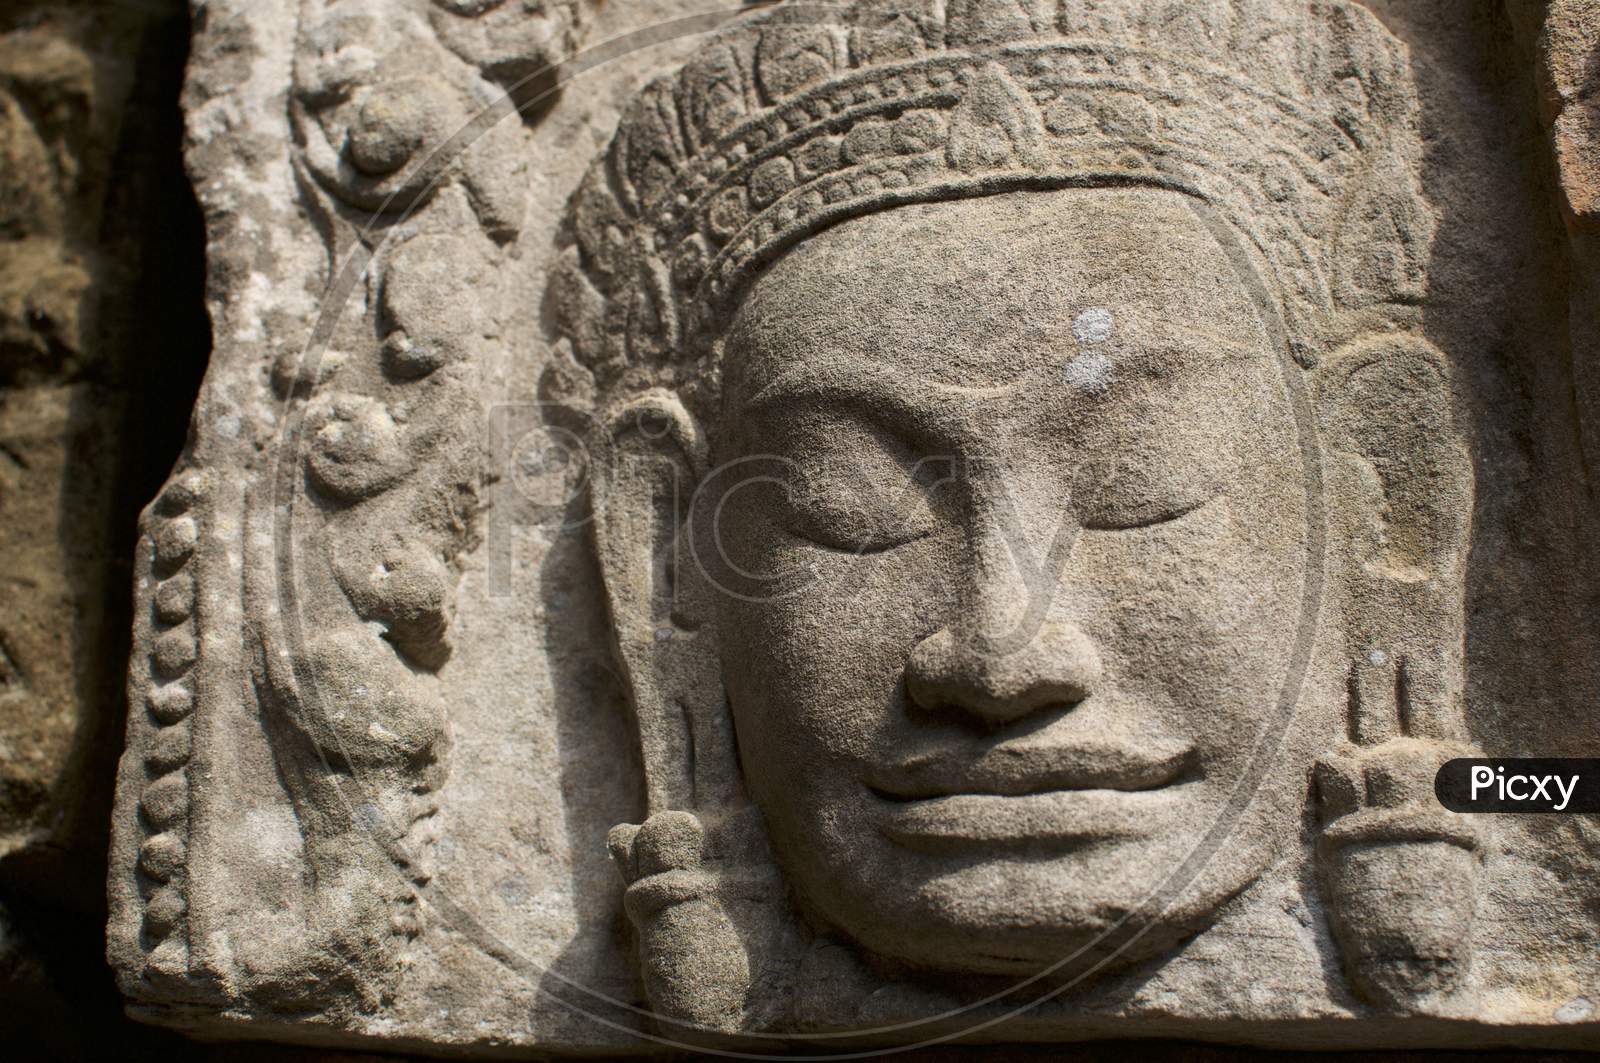 Stone Buddha Statue At Angkor Wat In Cambodia